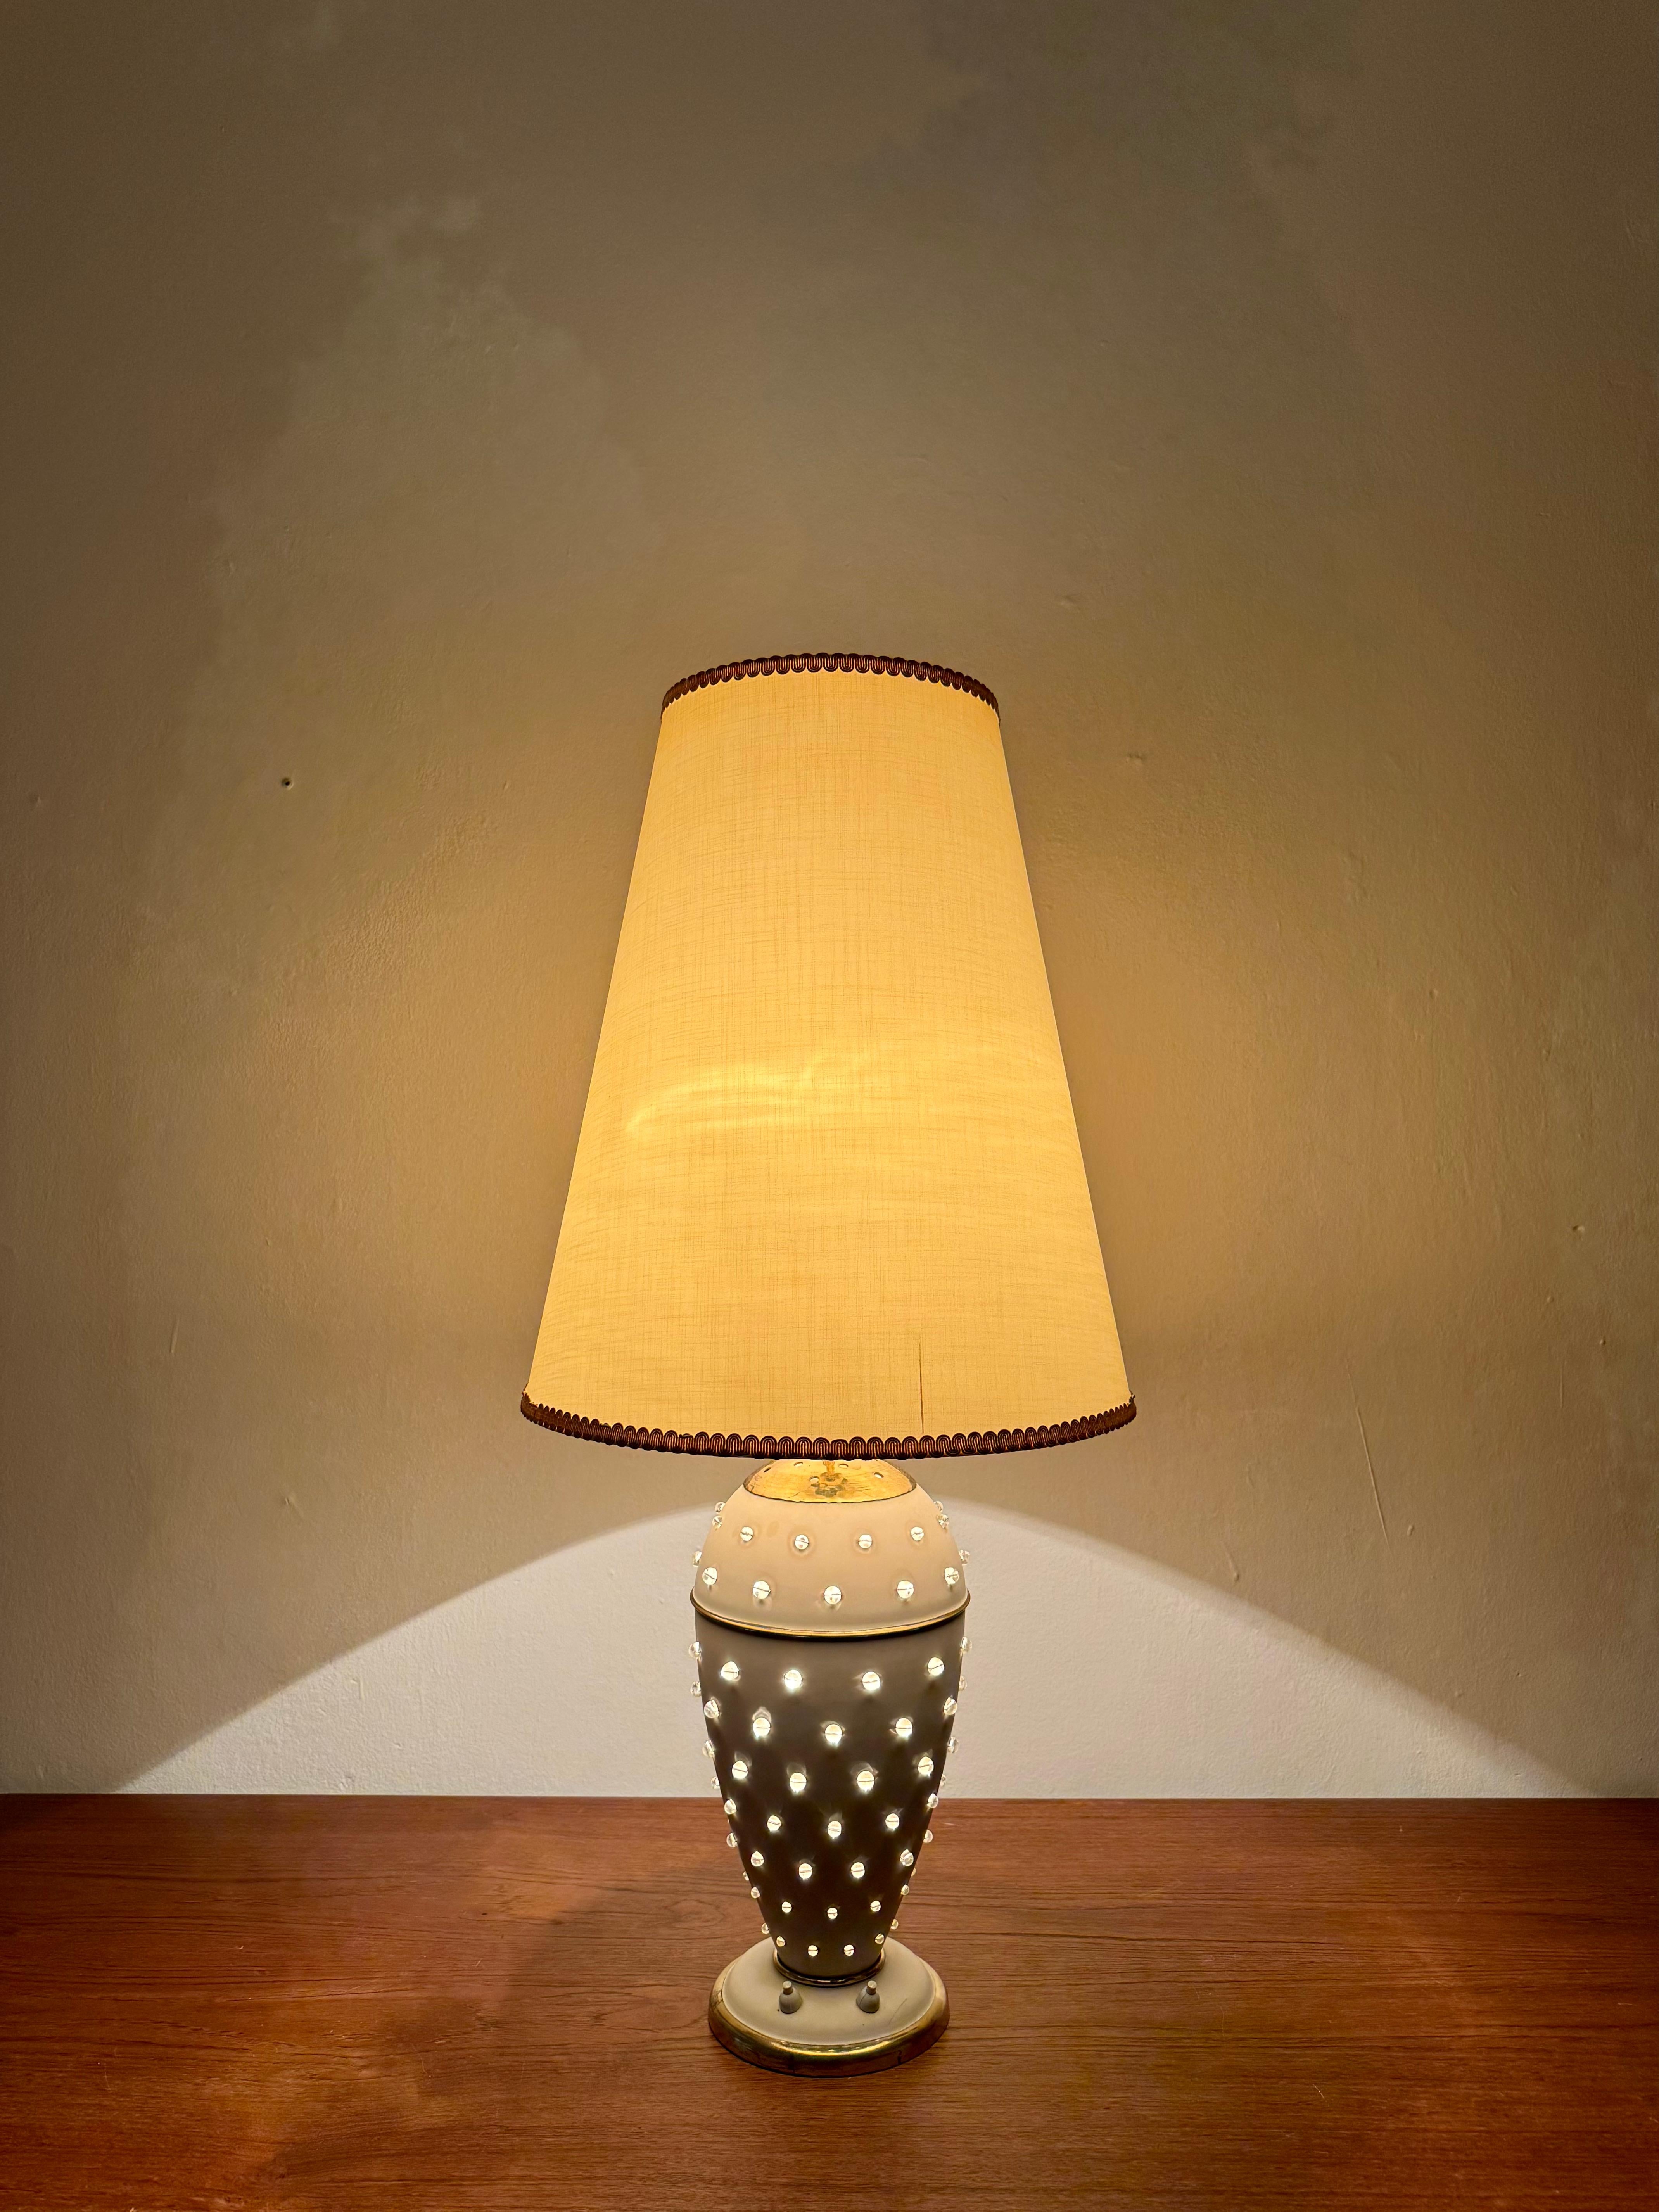 Mid-20th Century Table Lamp by Vereinigte Werkstätten For Sale